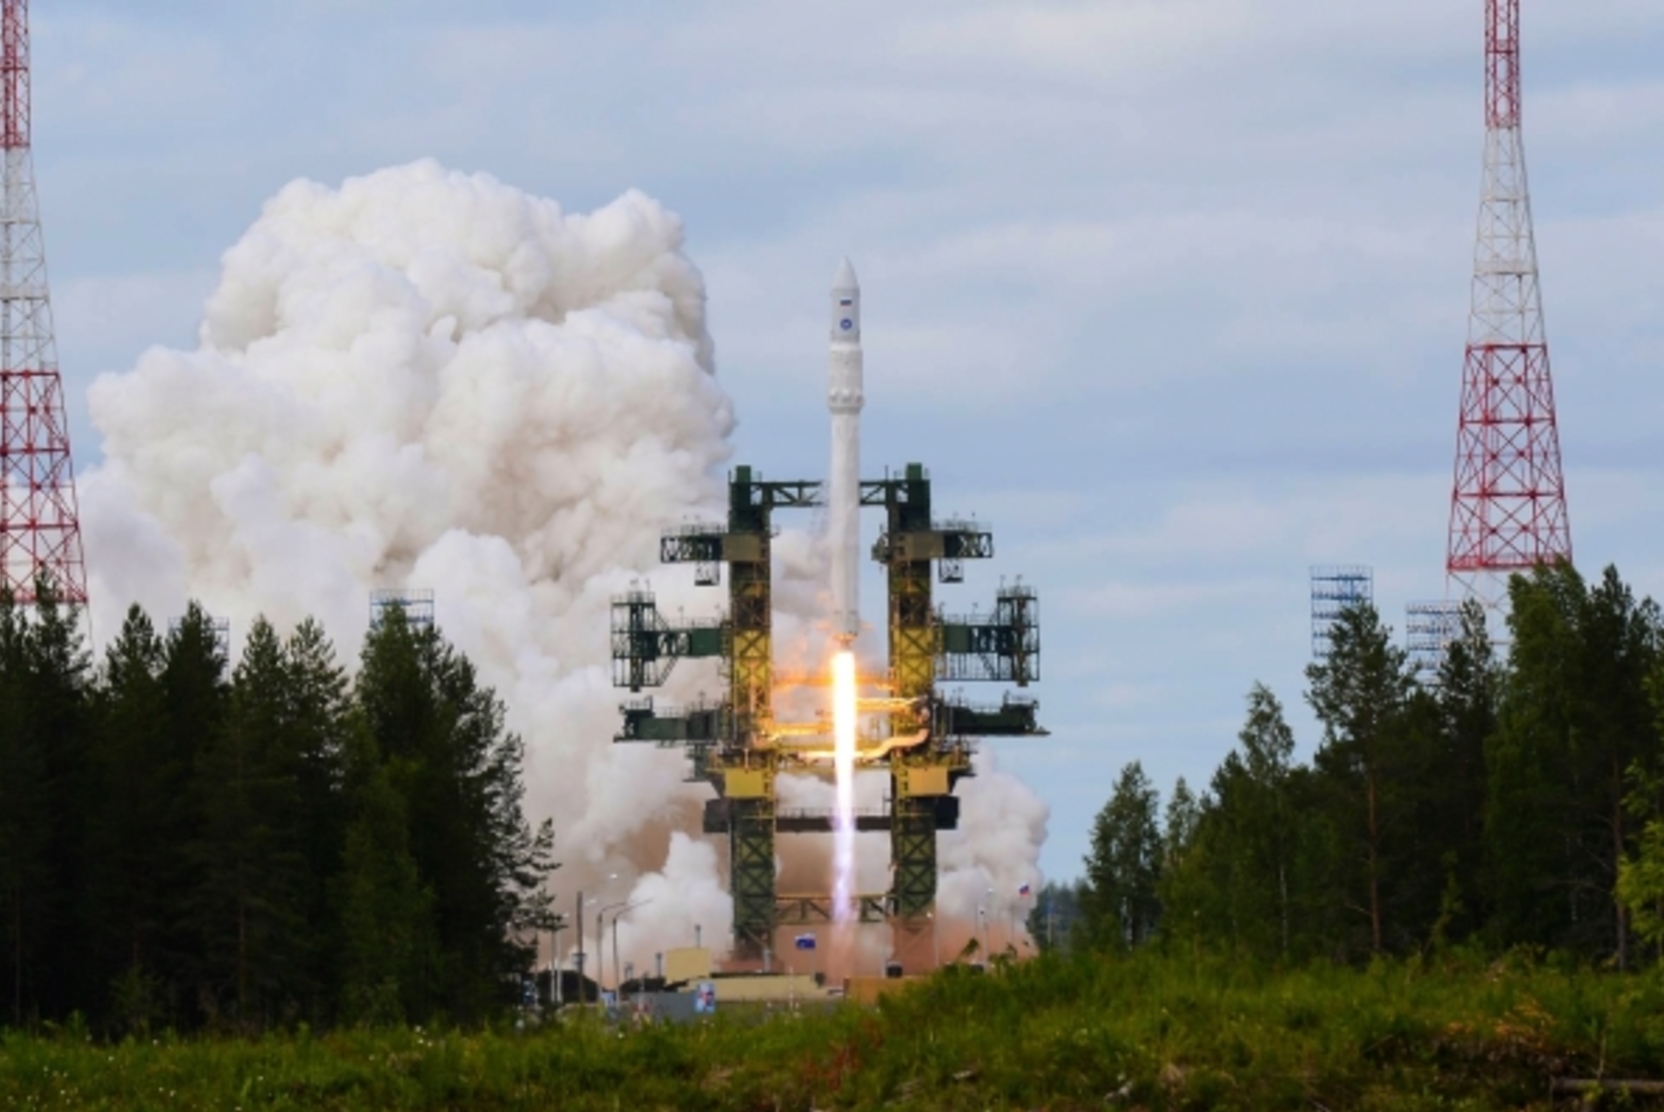 С космодрома «Плесецк» успешно запущена ракета «Ангара-А5»